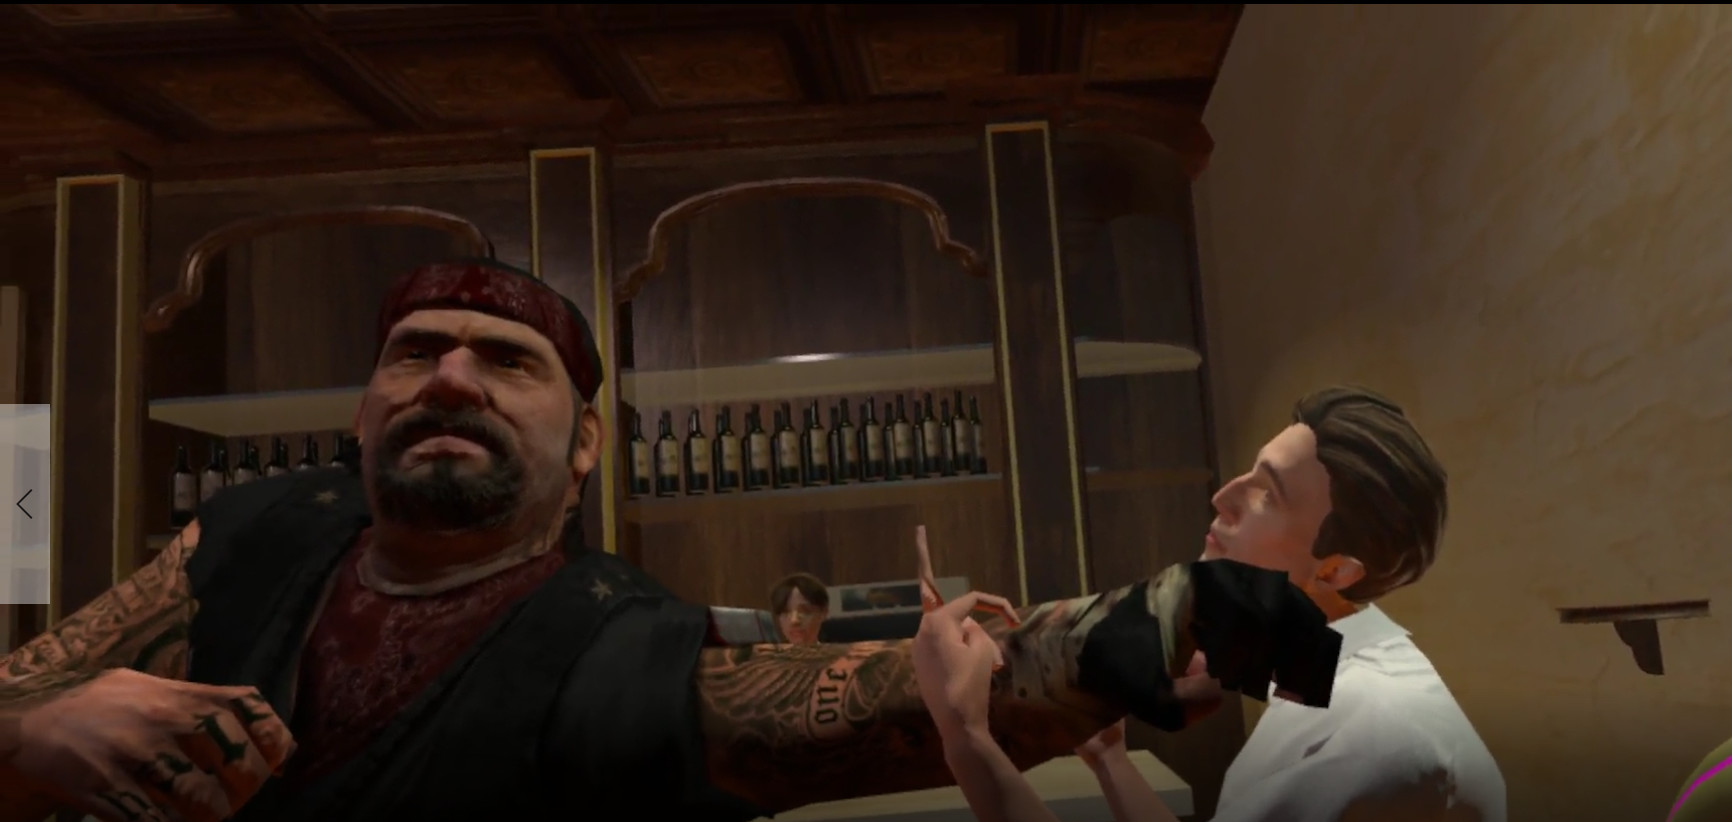 Drunkn Bar Fight screenshot